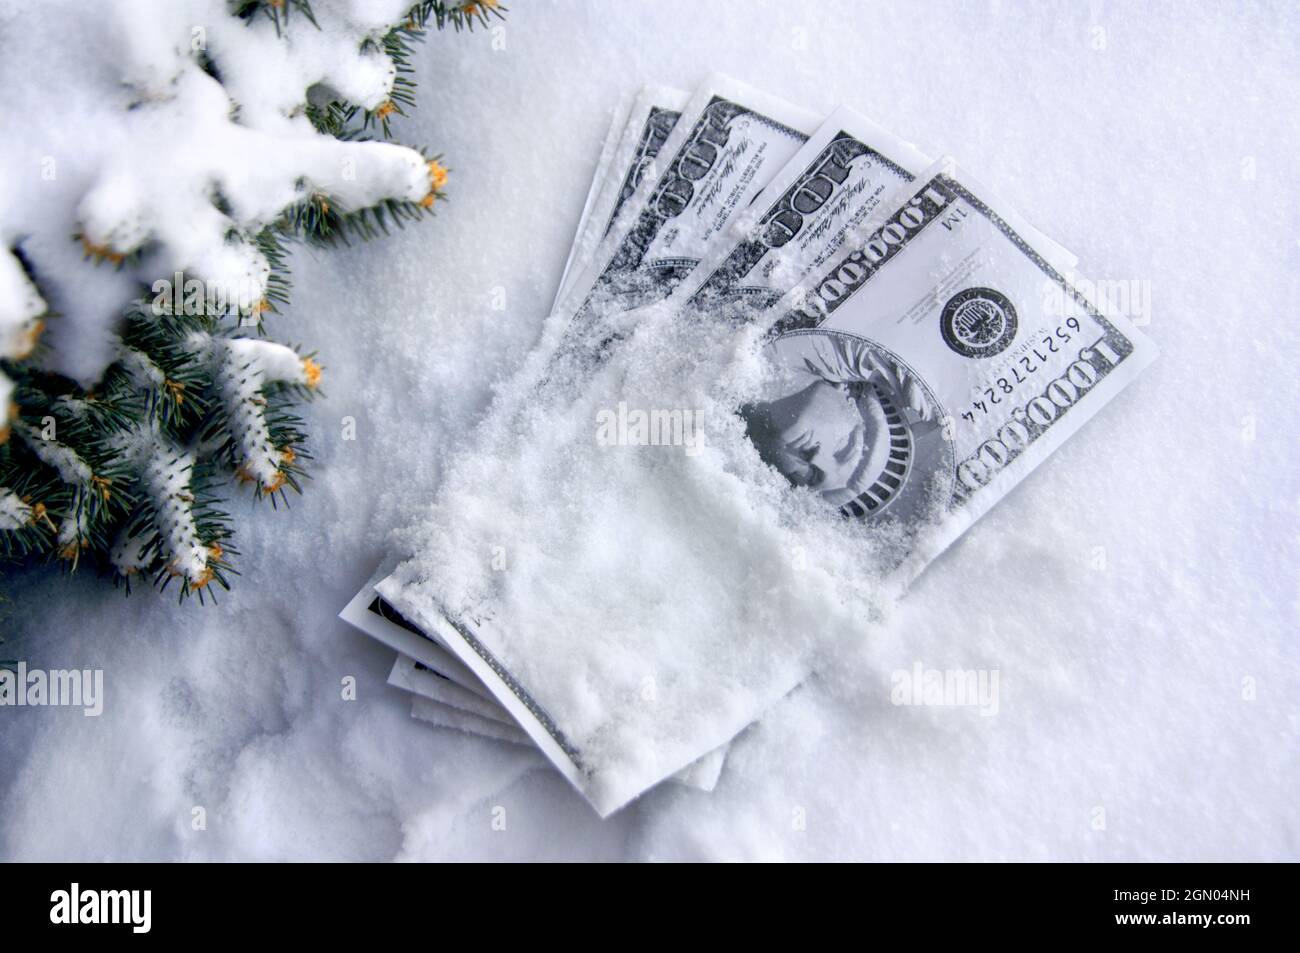 Haufen von Spielgeld ist mit Schnee bedeckt.  Tannenzweigen Rahmen Geld. Stockfoto